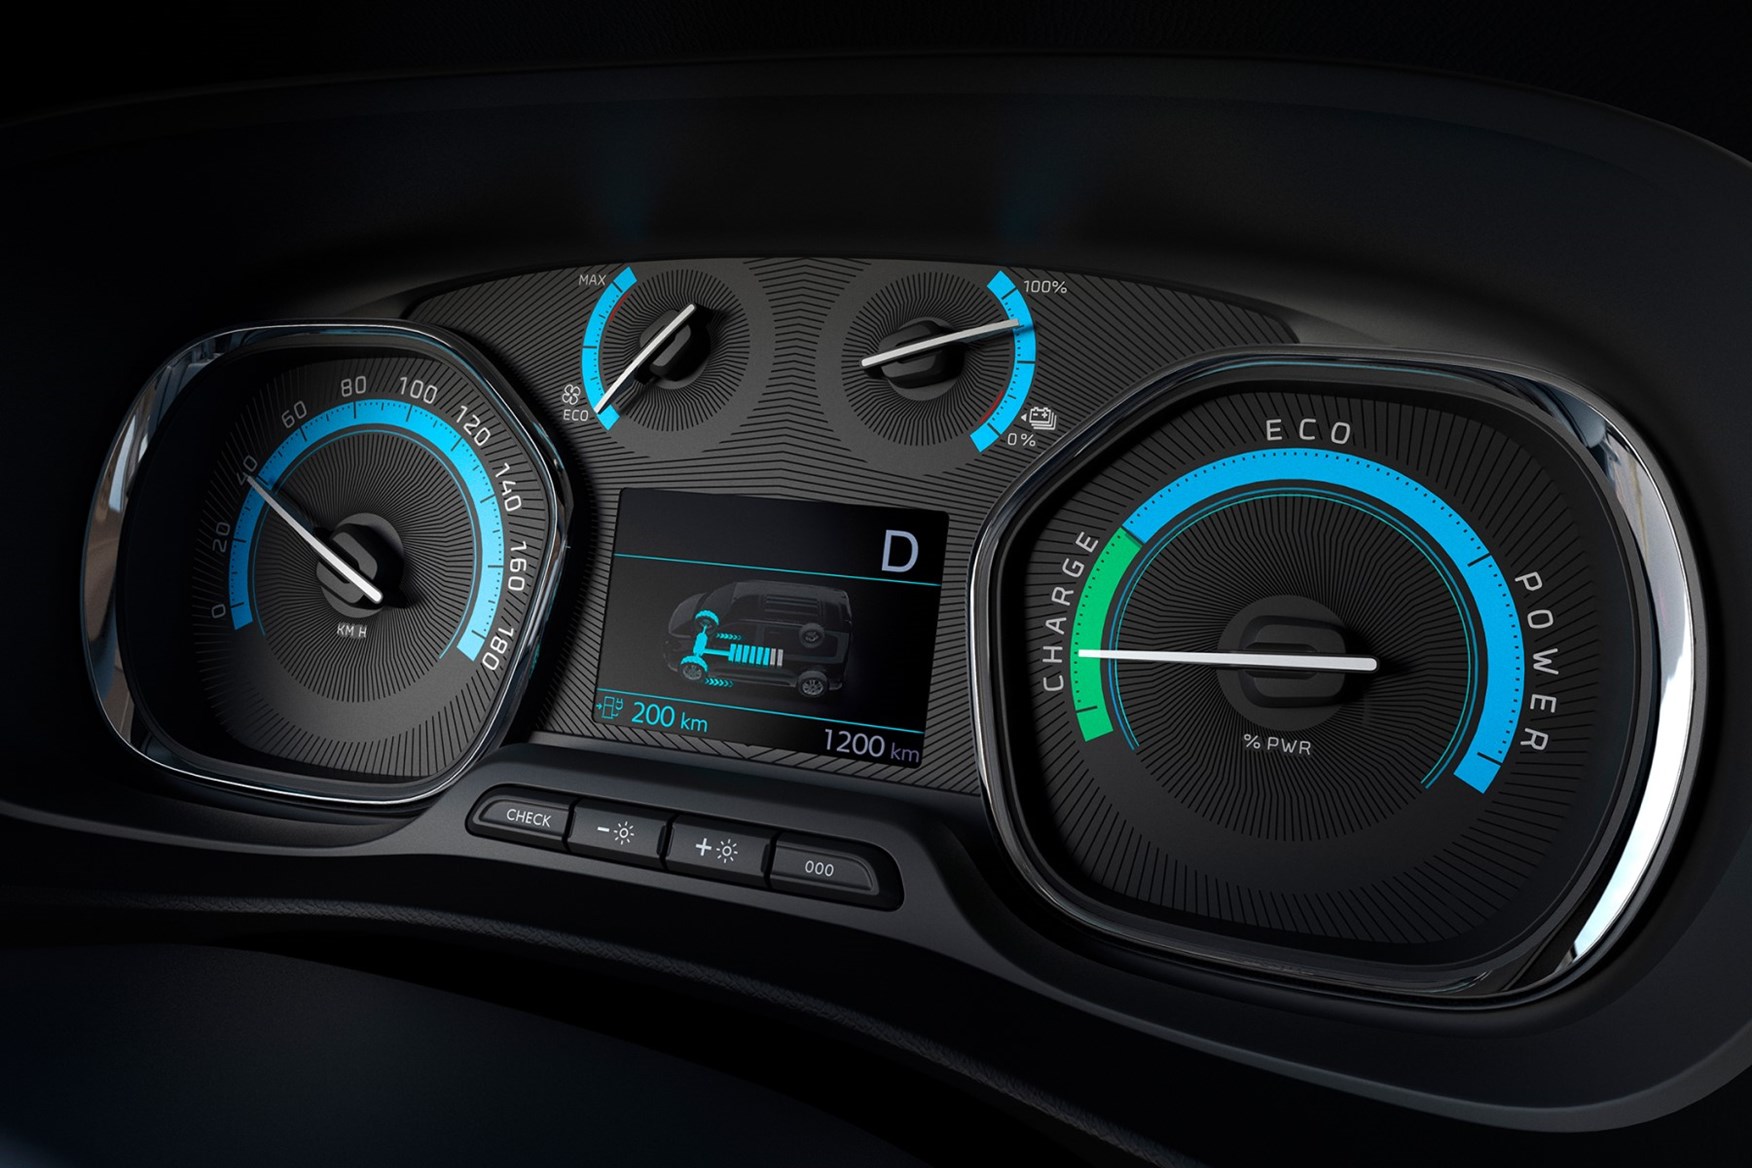 2021 Peugeot e-Expert dials